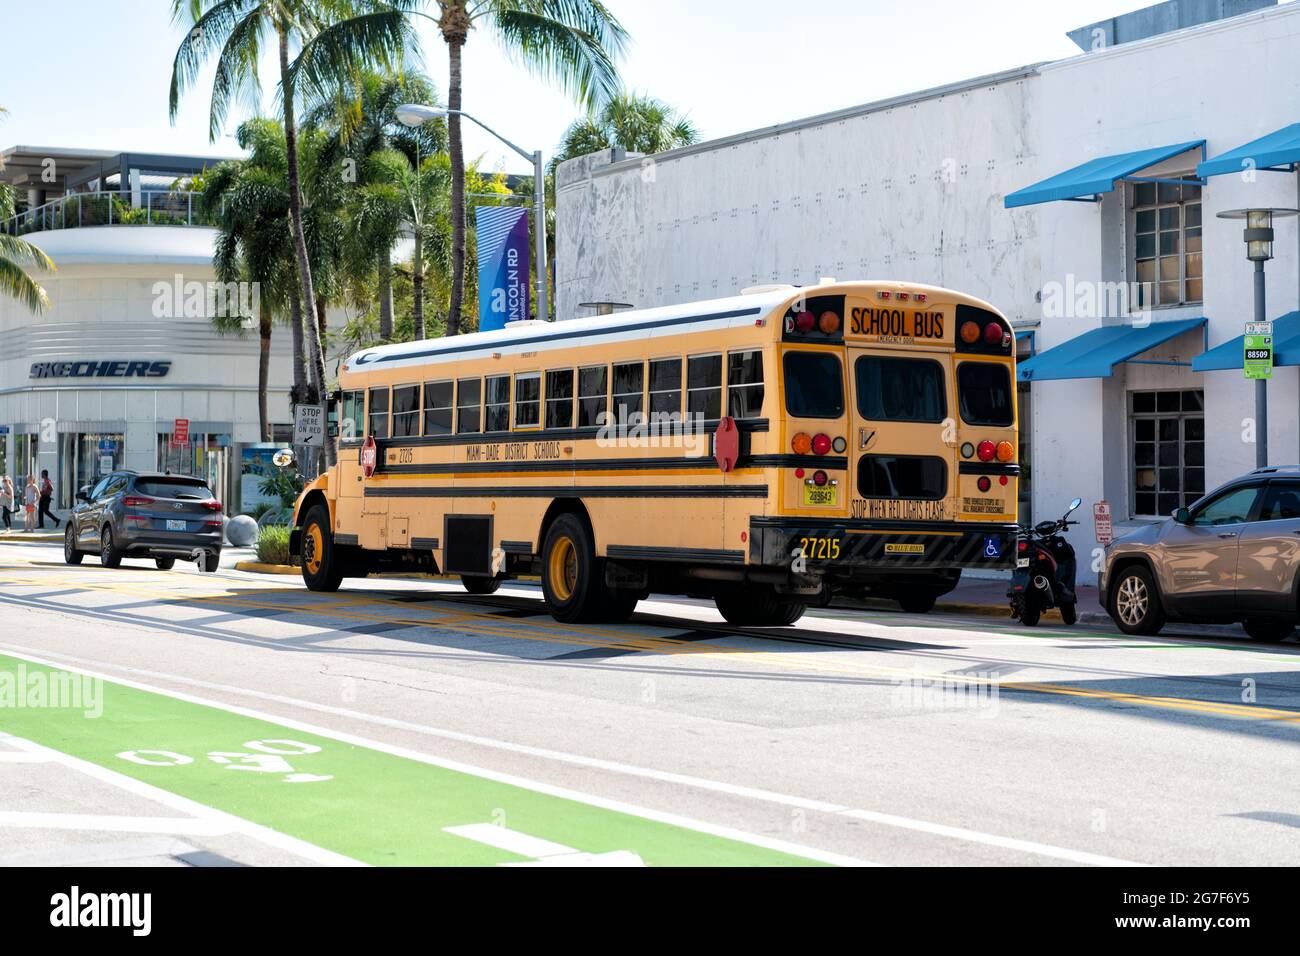 Los Angeles, California USA - 14 aprile 2021: Bus scolastico delle scuole miami dade vista laterale posteriore. Foto Stock